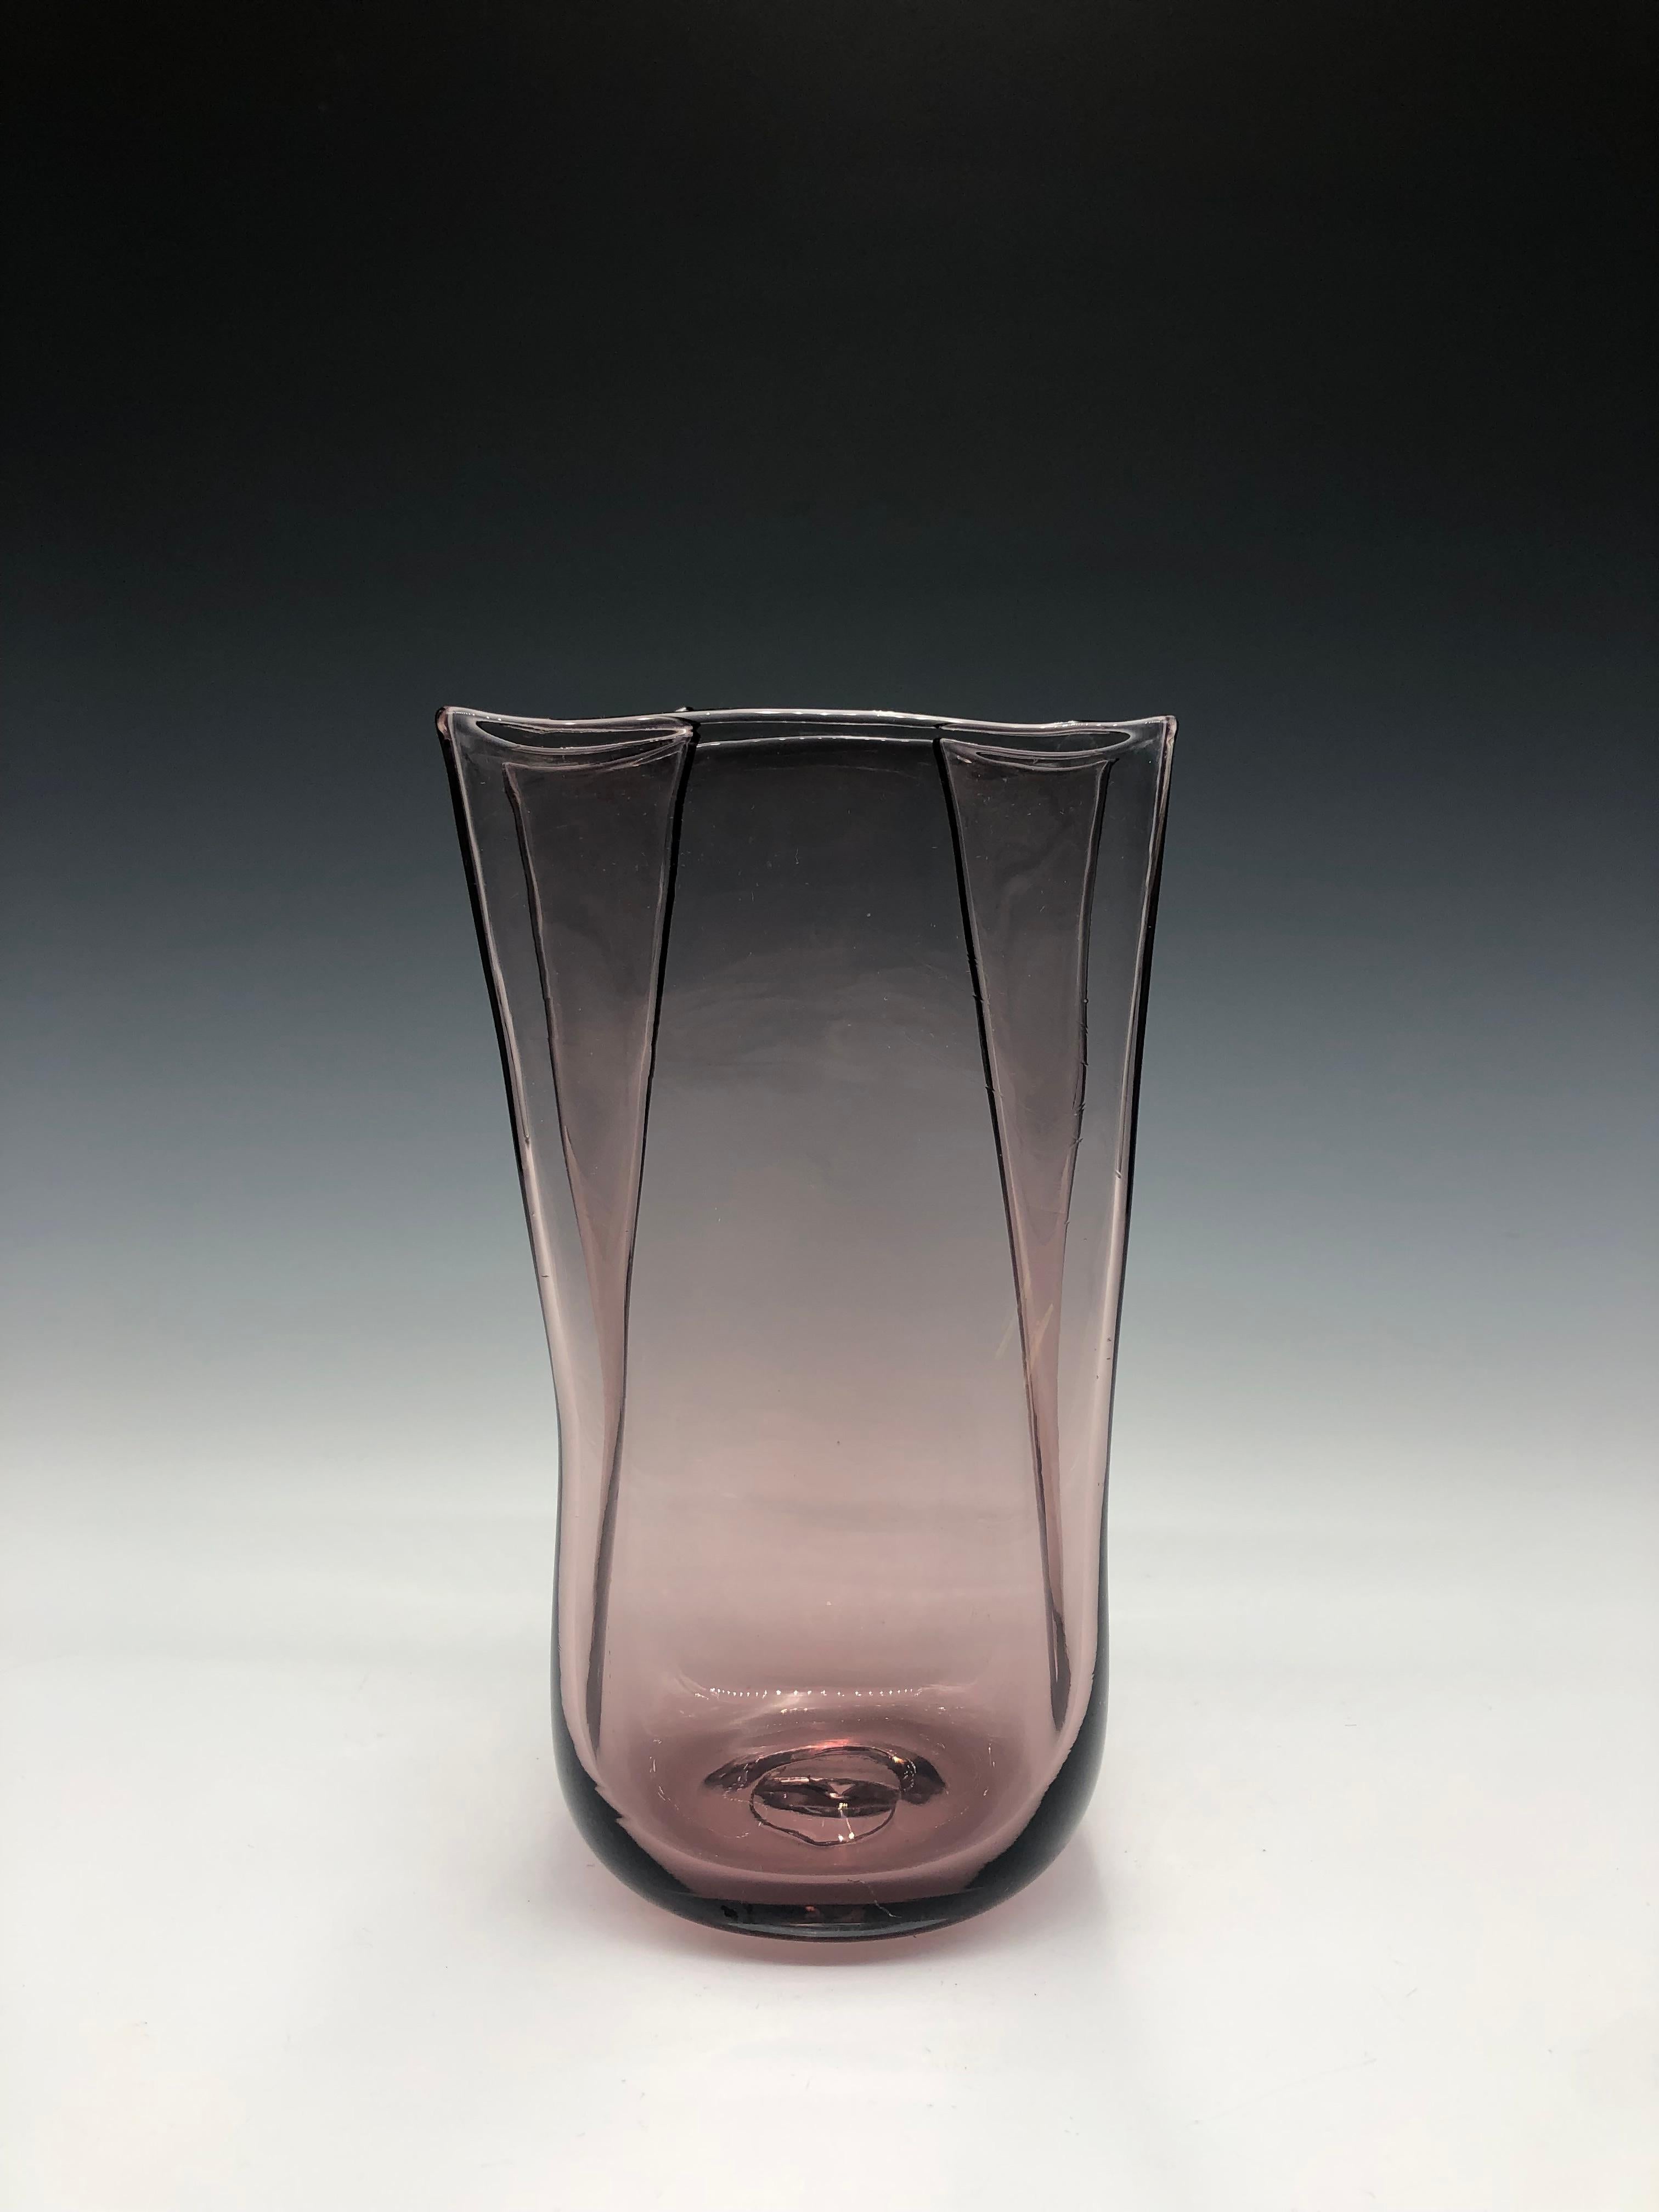 Vase vintage en verre d'art soufflé à la main dans un sac en papier, de couleur violet pâle et améthyste, de marque Blenko, circa 1980.   

Taille : 8